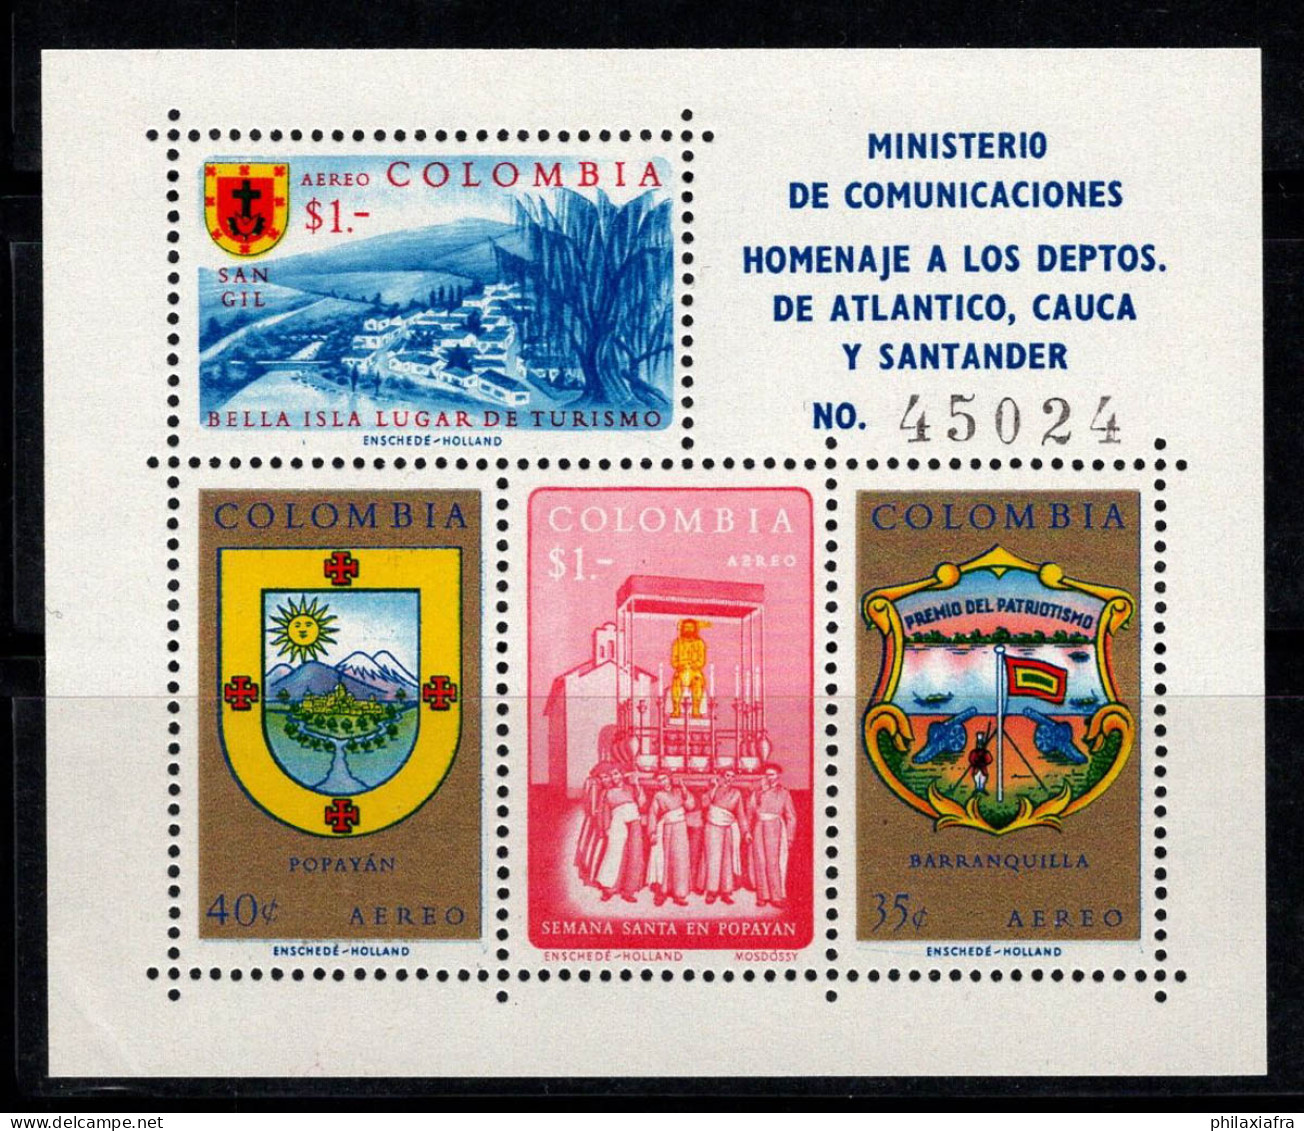 Colombie 1961 Mi. Bl. 23 Bloc Feuillet 100% Neuf ** Océan Atlantique - Colombia